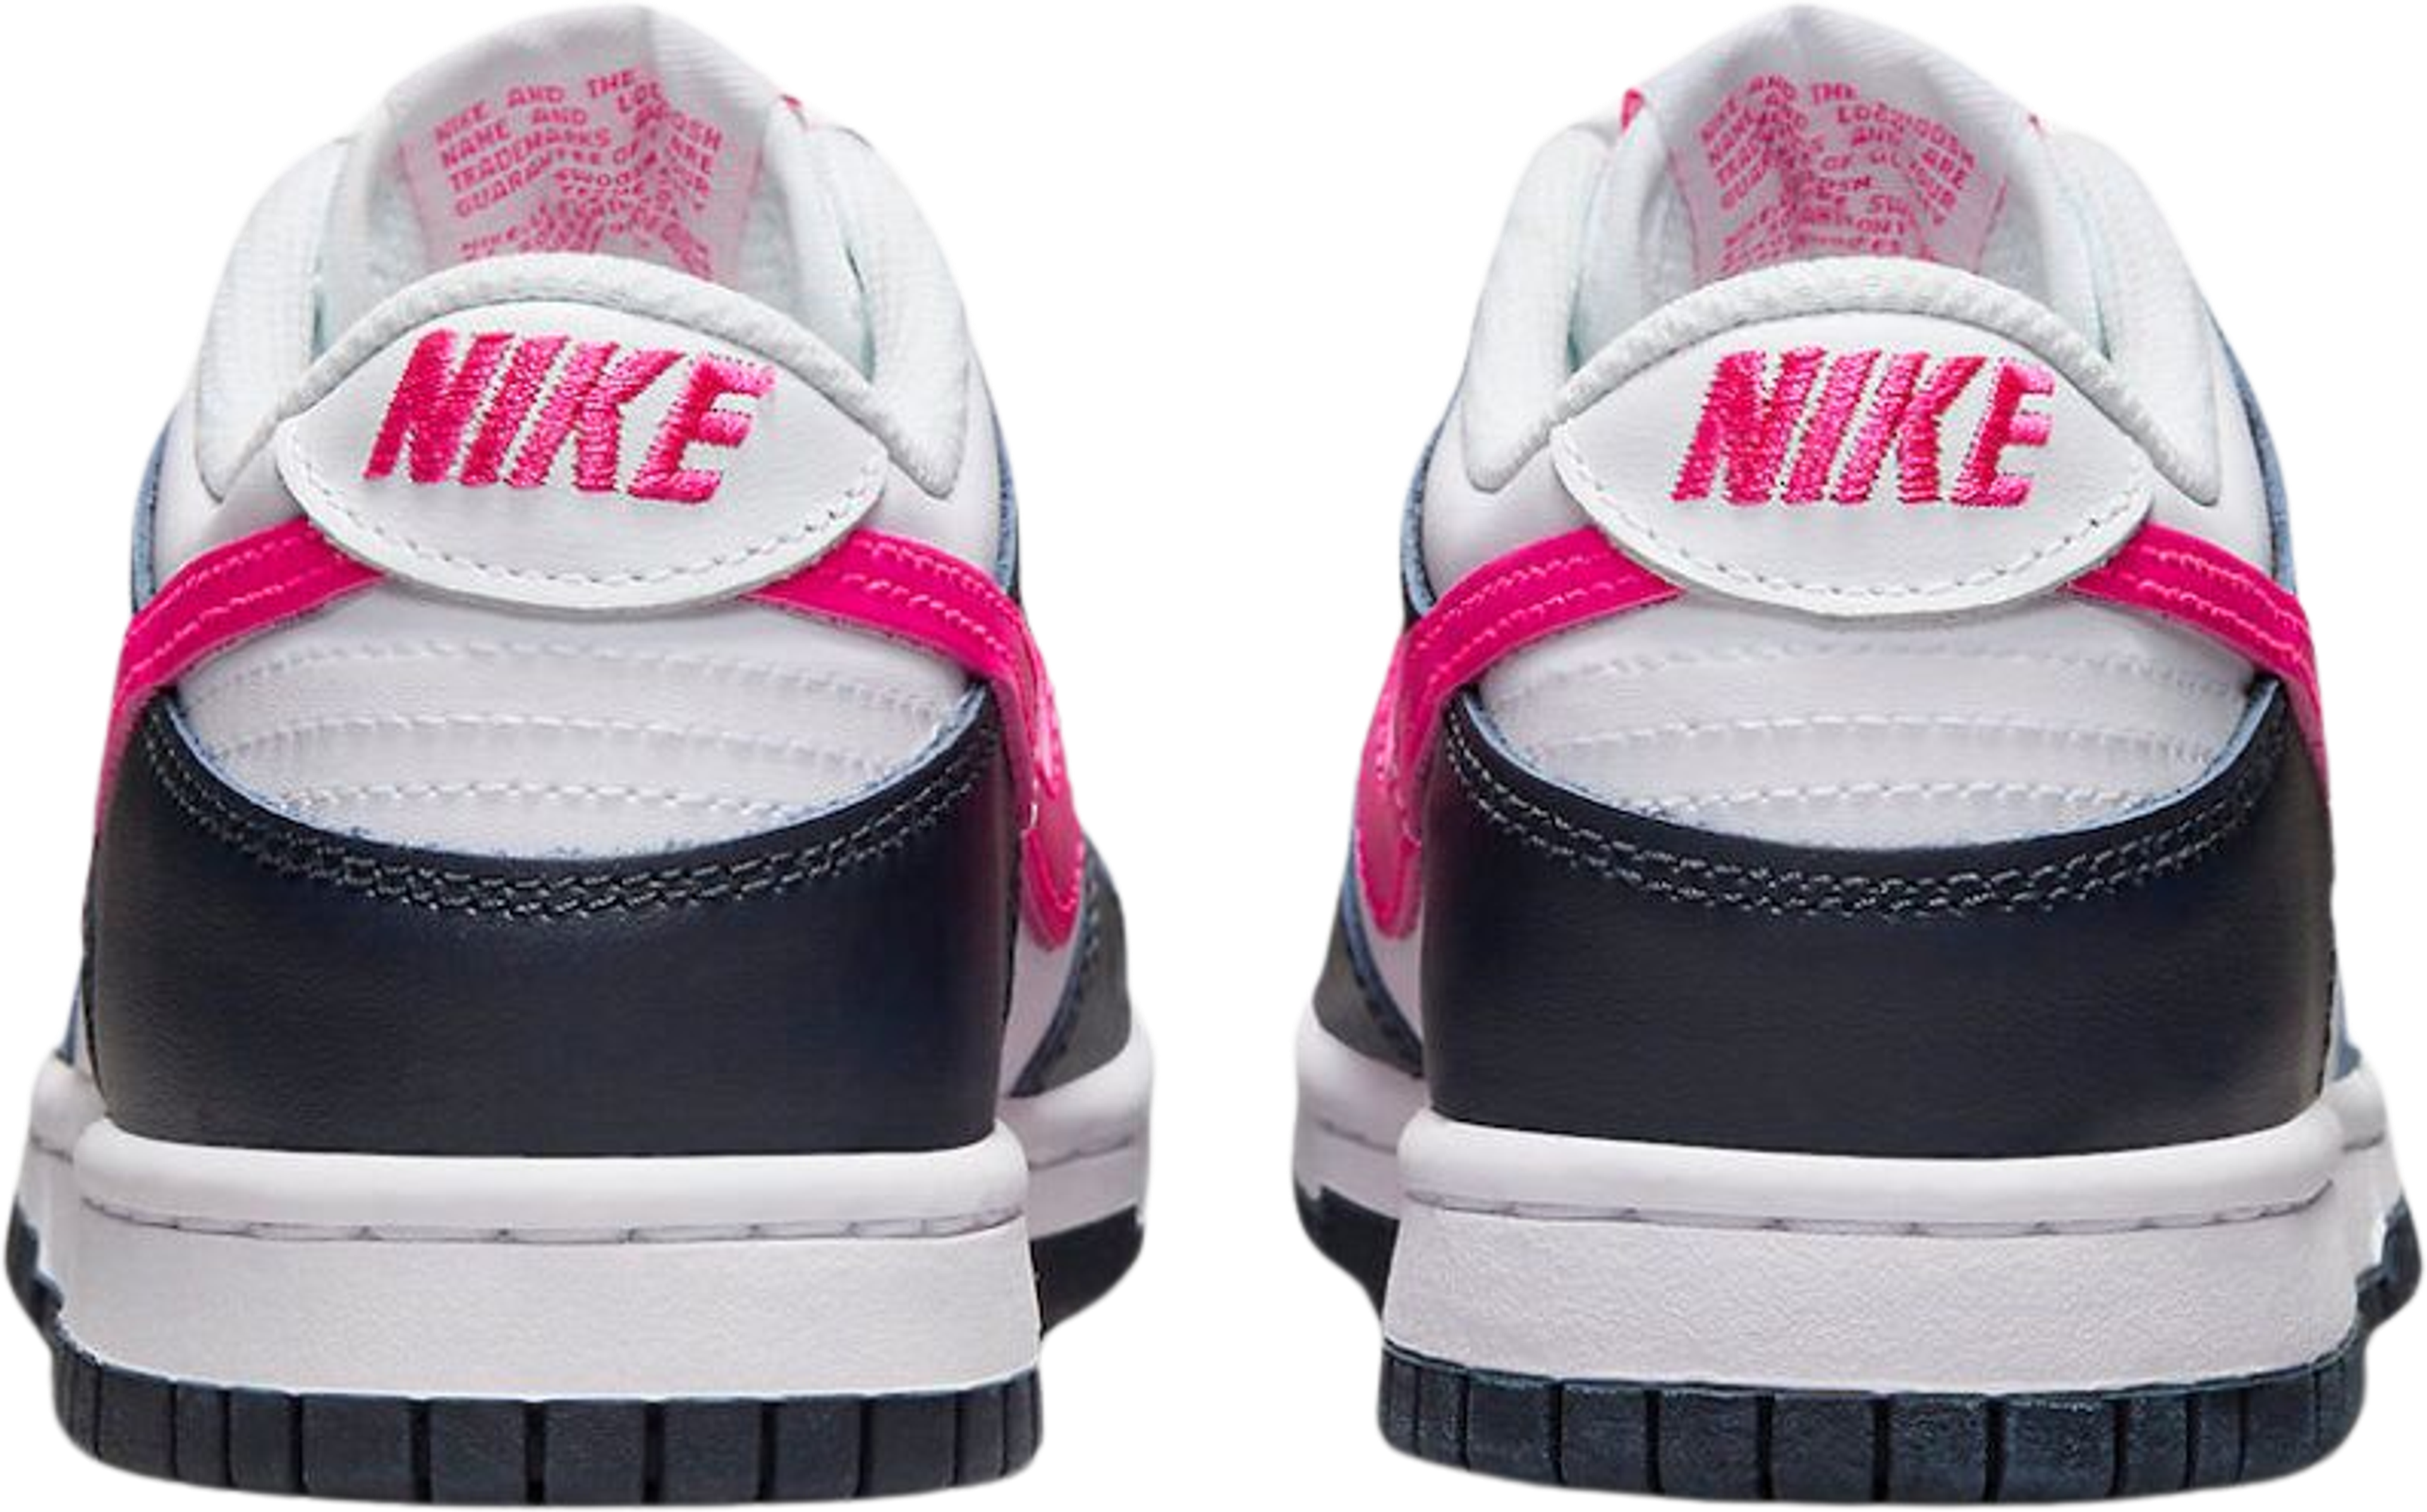 Nike Dunk Low Dark Obsidian/Fierce Pink (GS)